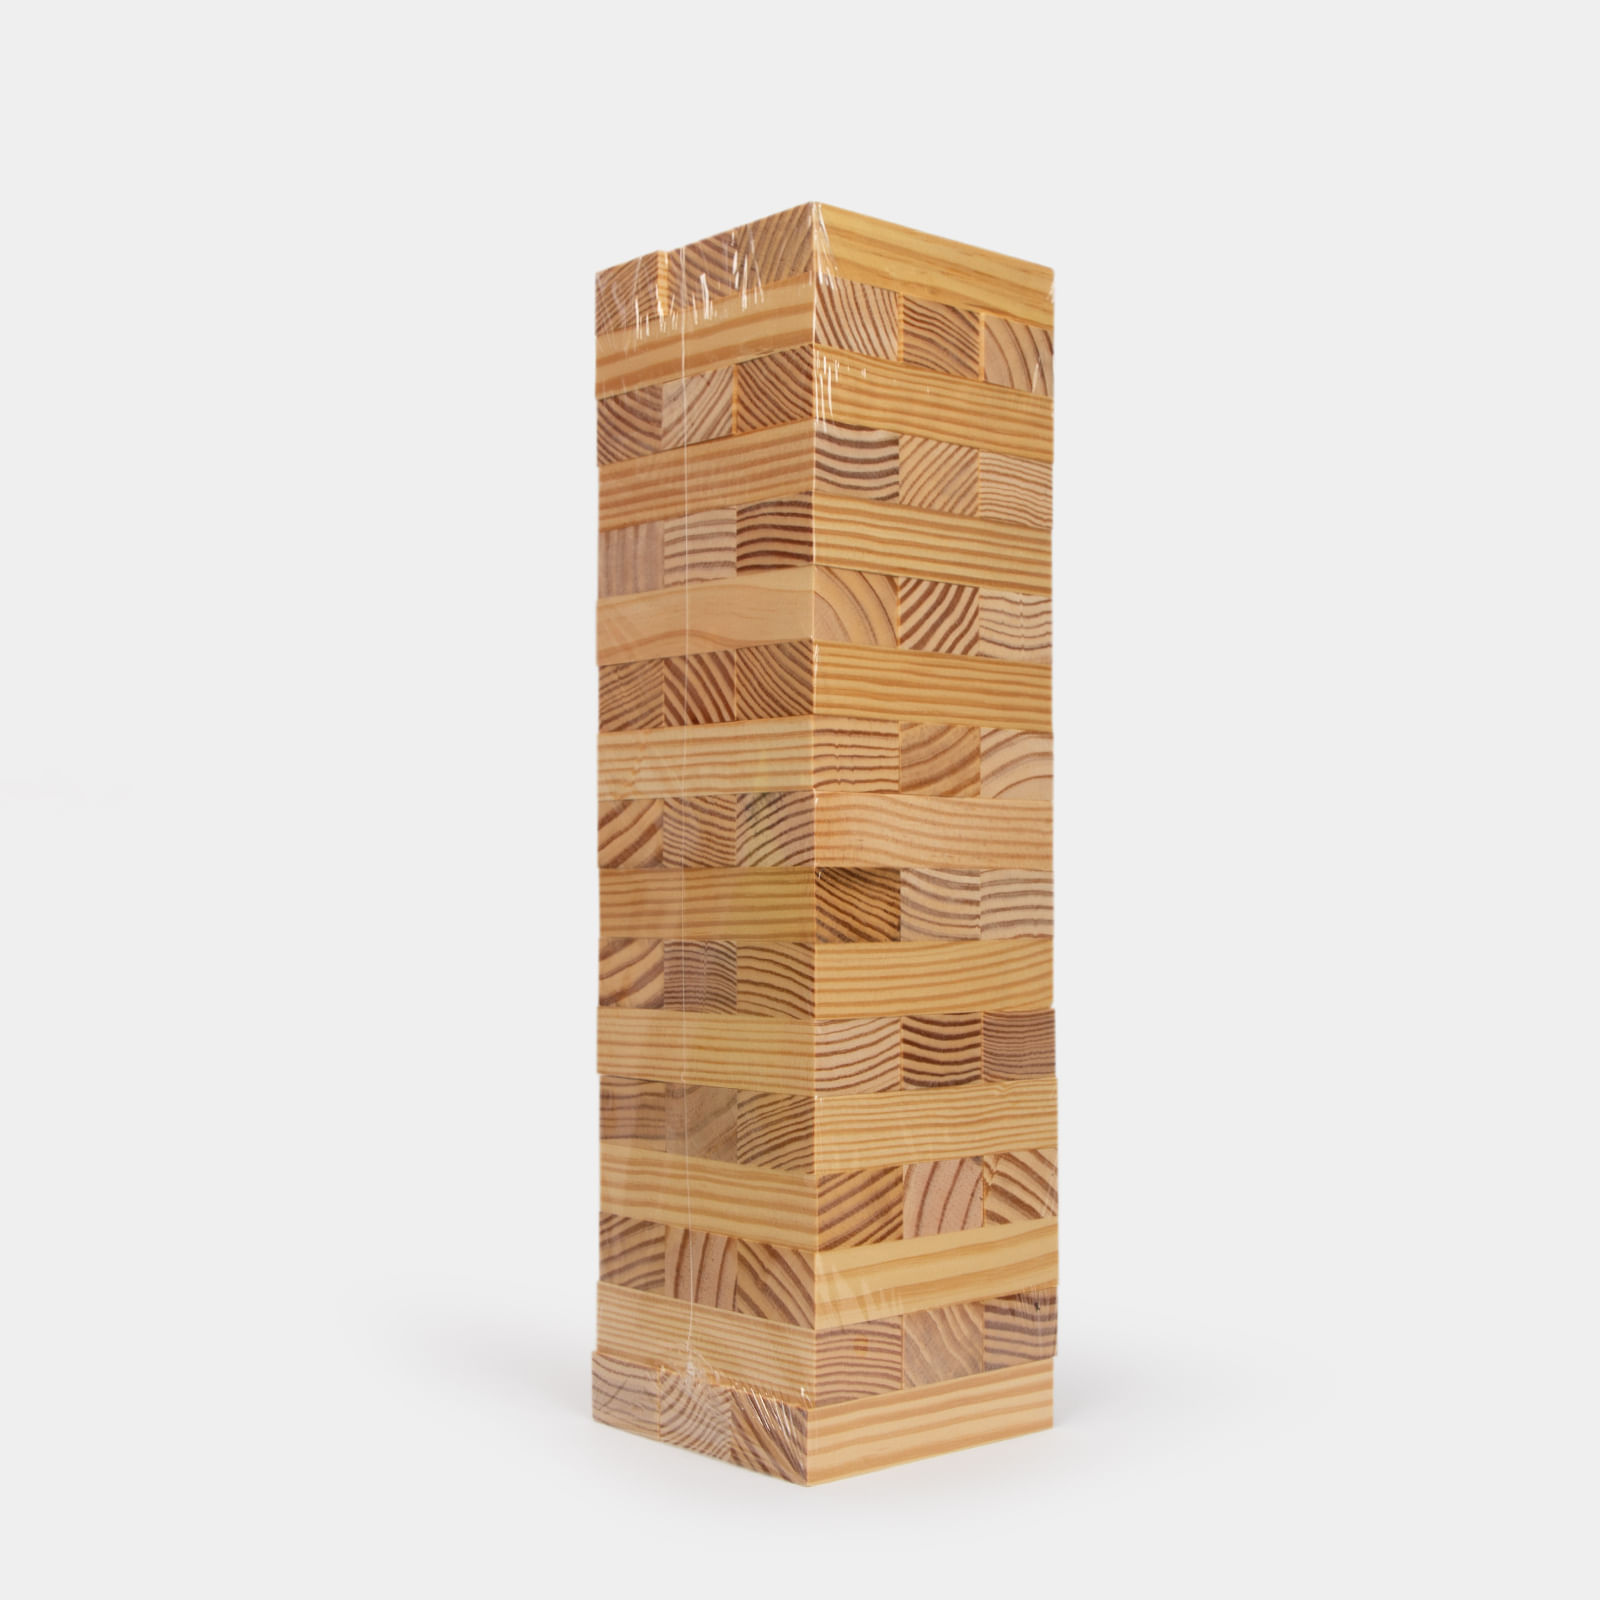 Paradoja intencional Factibilidad Juego torre de bloques x 51 fichas de madera